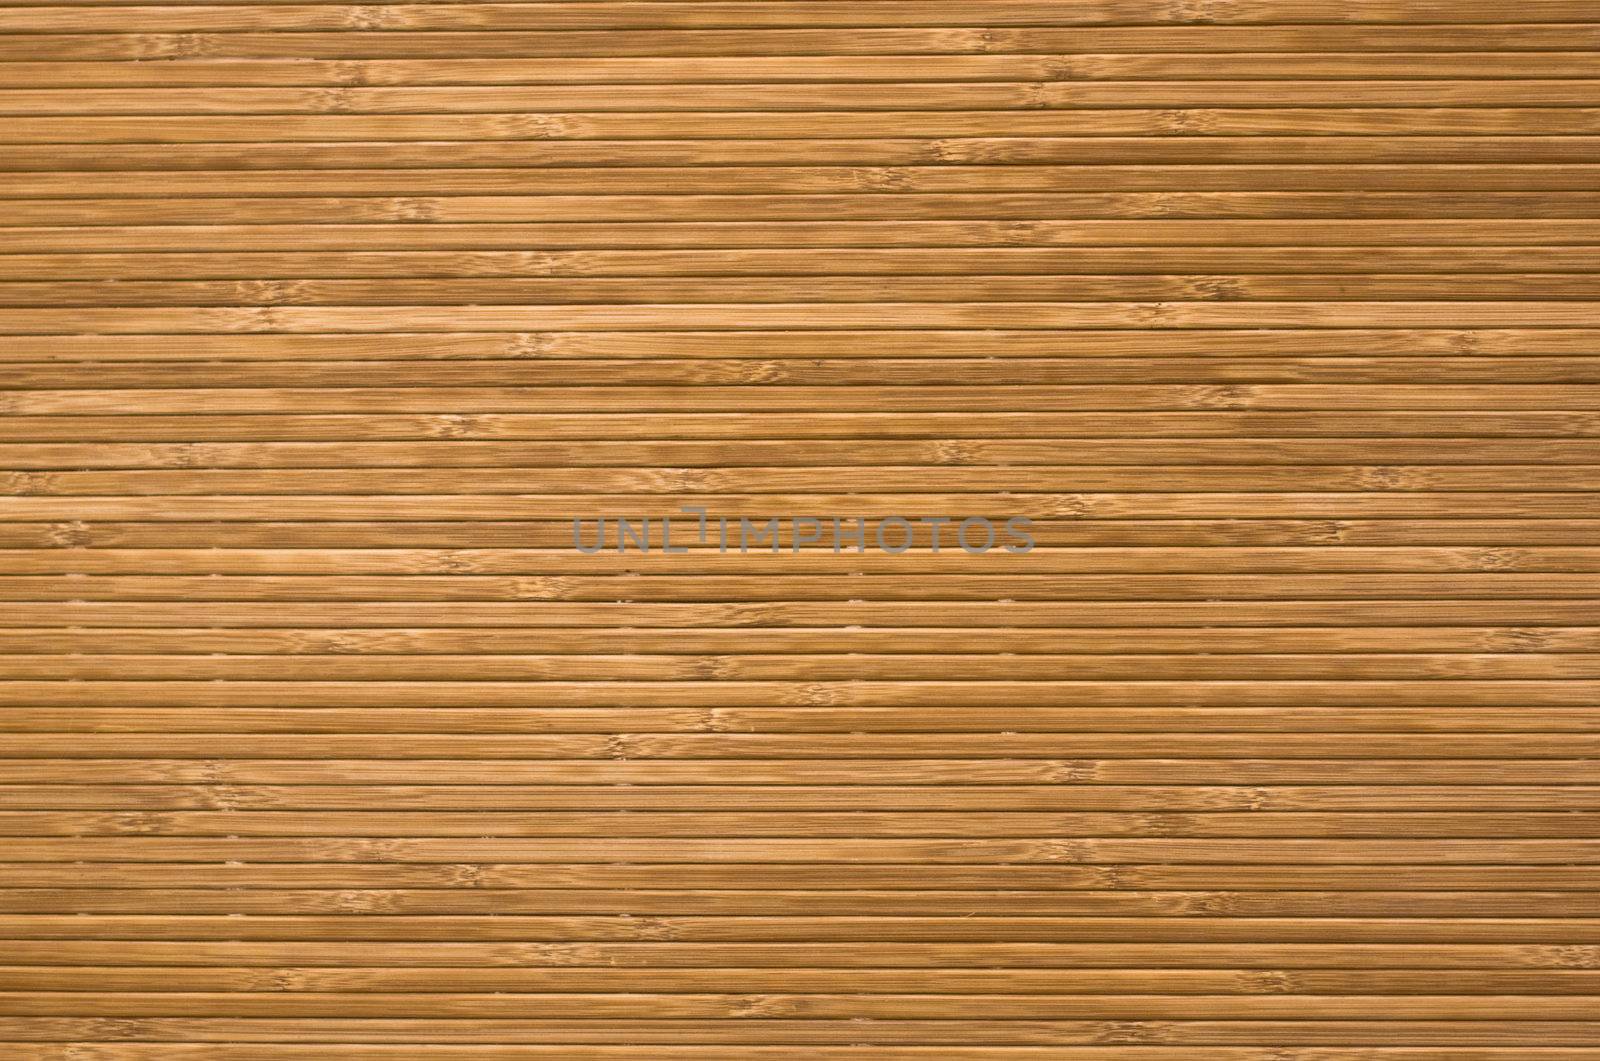 Pressed bamboo texture by rozhenyuk